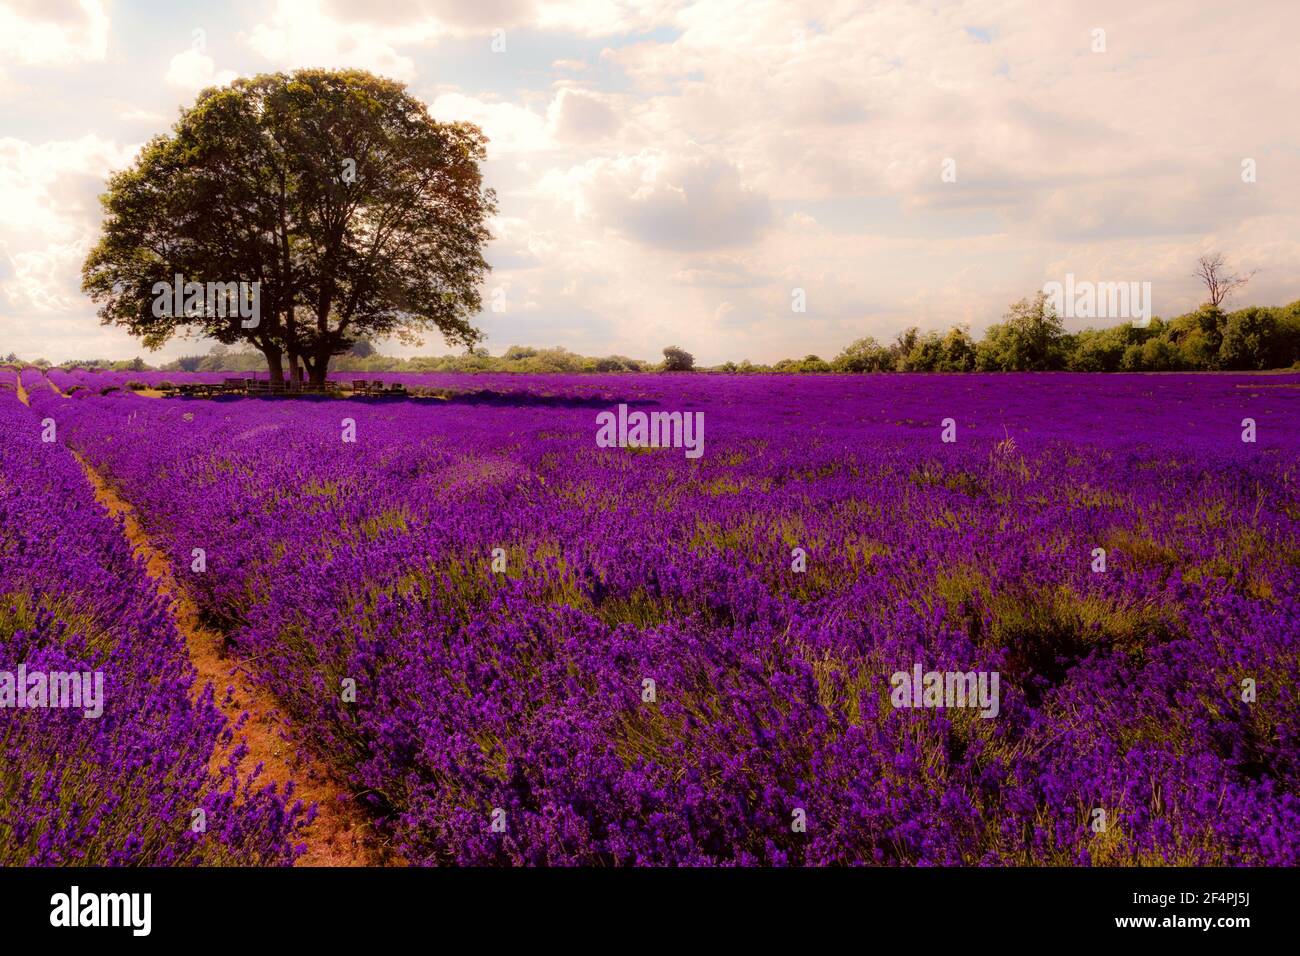 Sommerlandschaft, blühende Lavendelblüte und schöne Landschaft Natur Konzept Thema mit einem Baum in der Mitte eines leeren Feldes in der warmen Seufzer Stockfoto